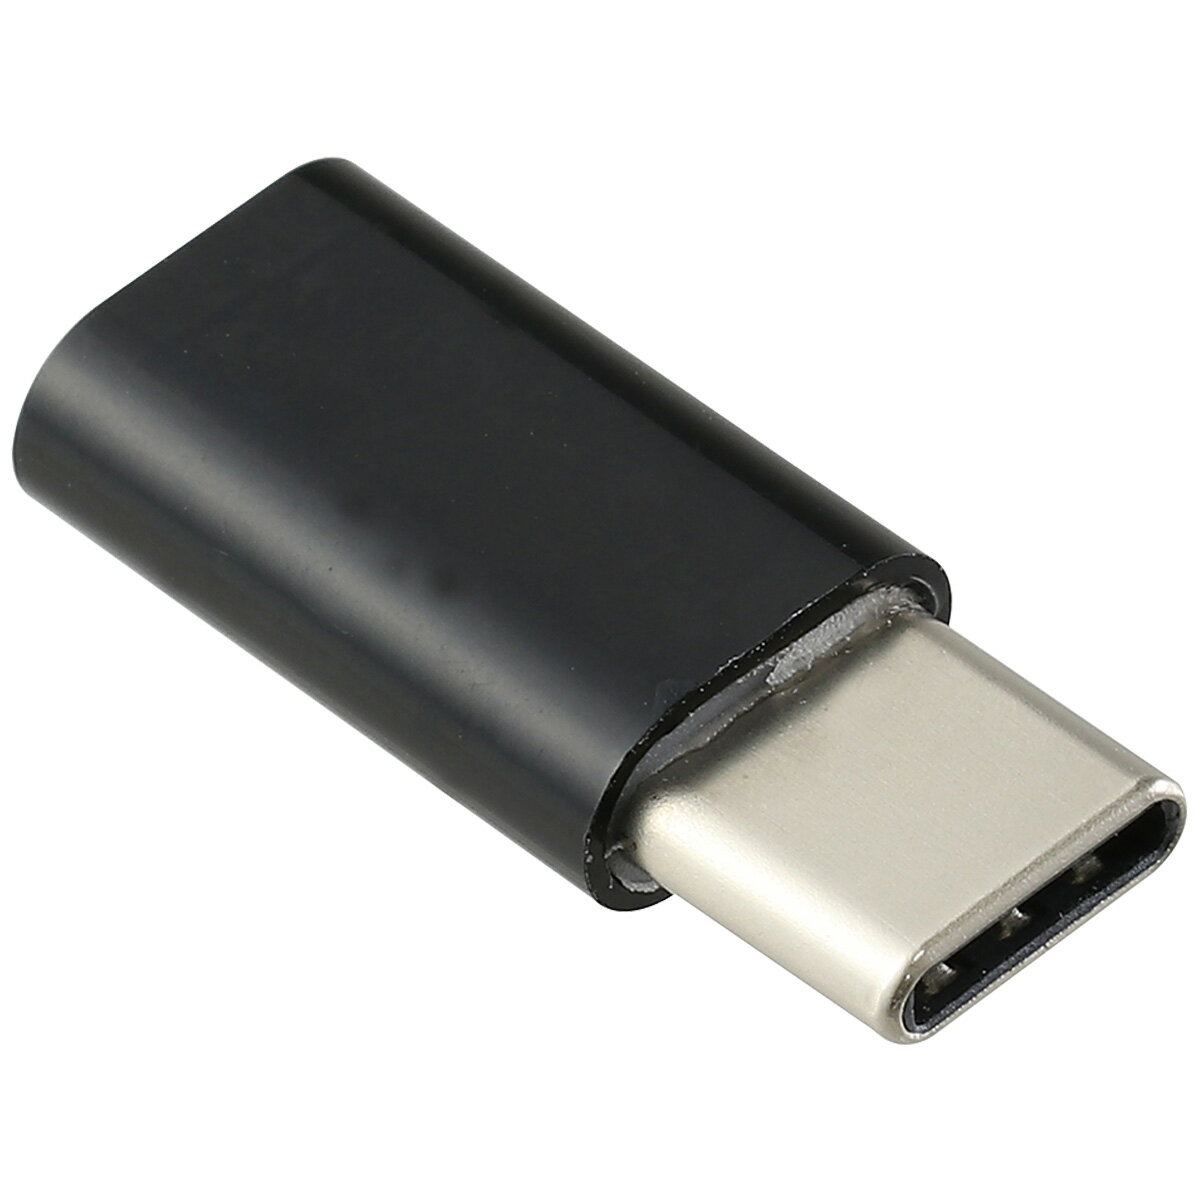 USB変換アダプタ- (MicroB-TypeC) USBケーブル USBアダプター type-b タイプC マイクロB 接続 PCアクセサリー パソコン周辺機器 接続端子